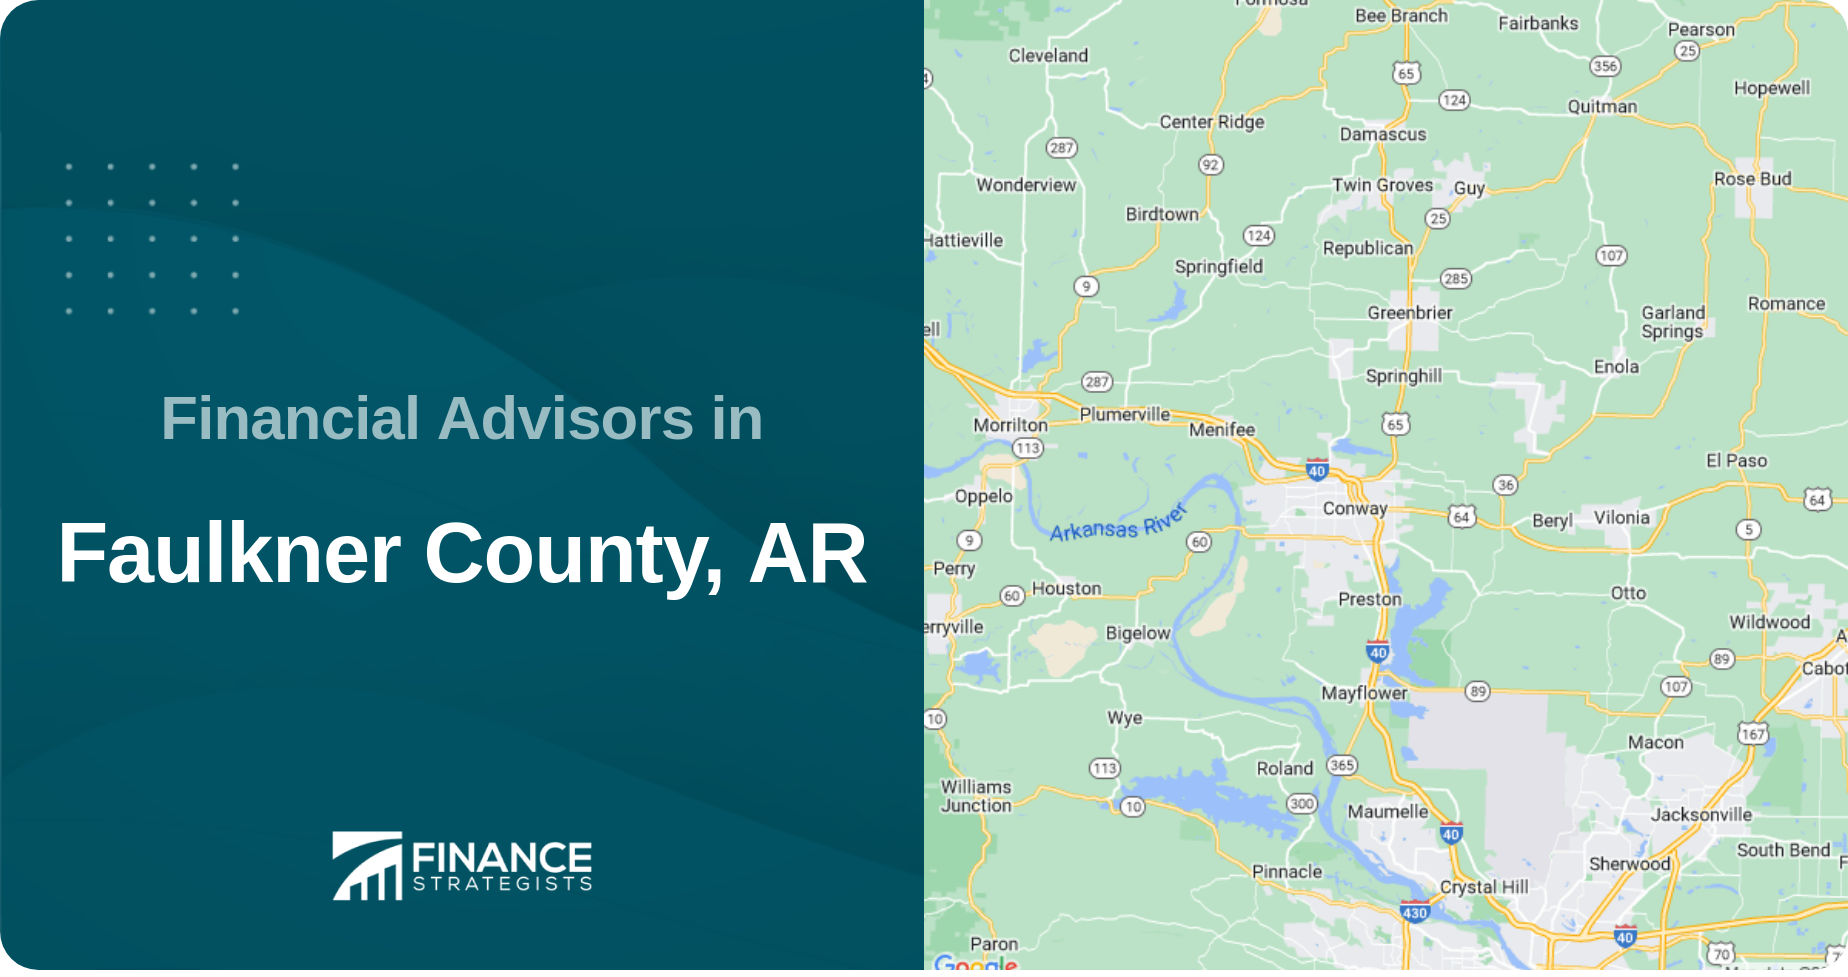 Financial Advisors in Faulkner County, AR